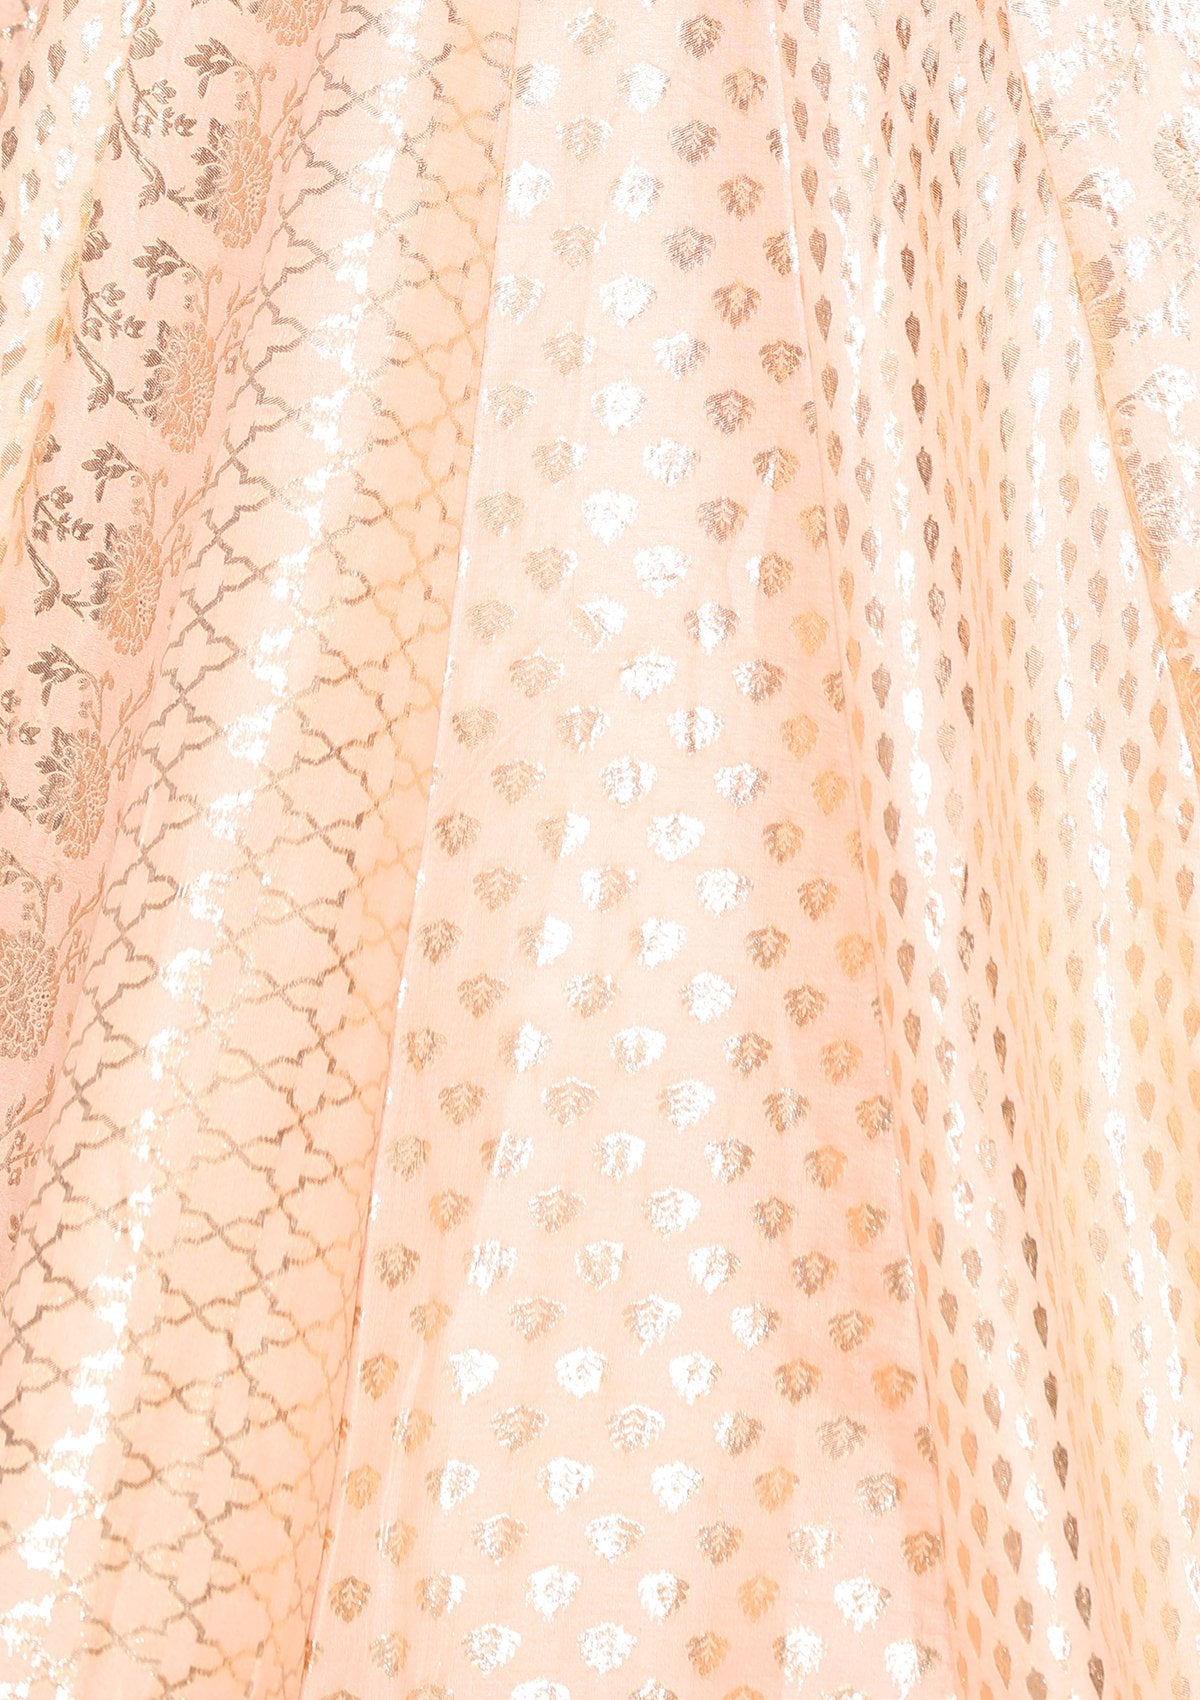 Pink Banarasi Silk Designer Lehenga-Koskii